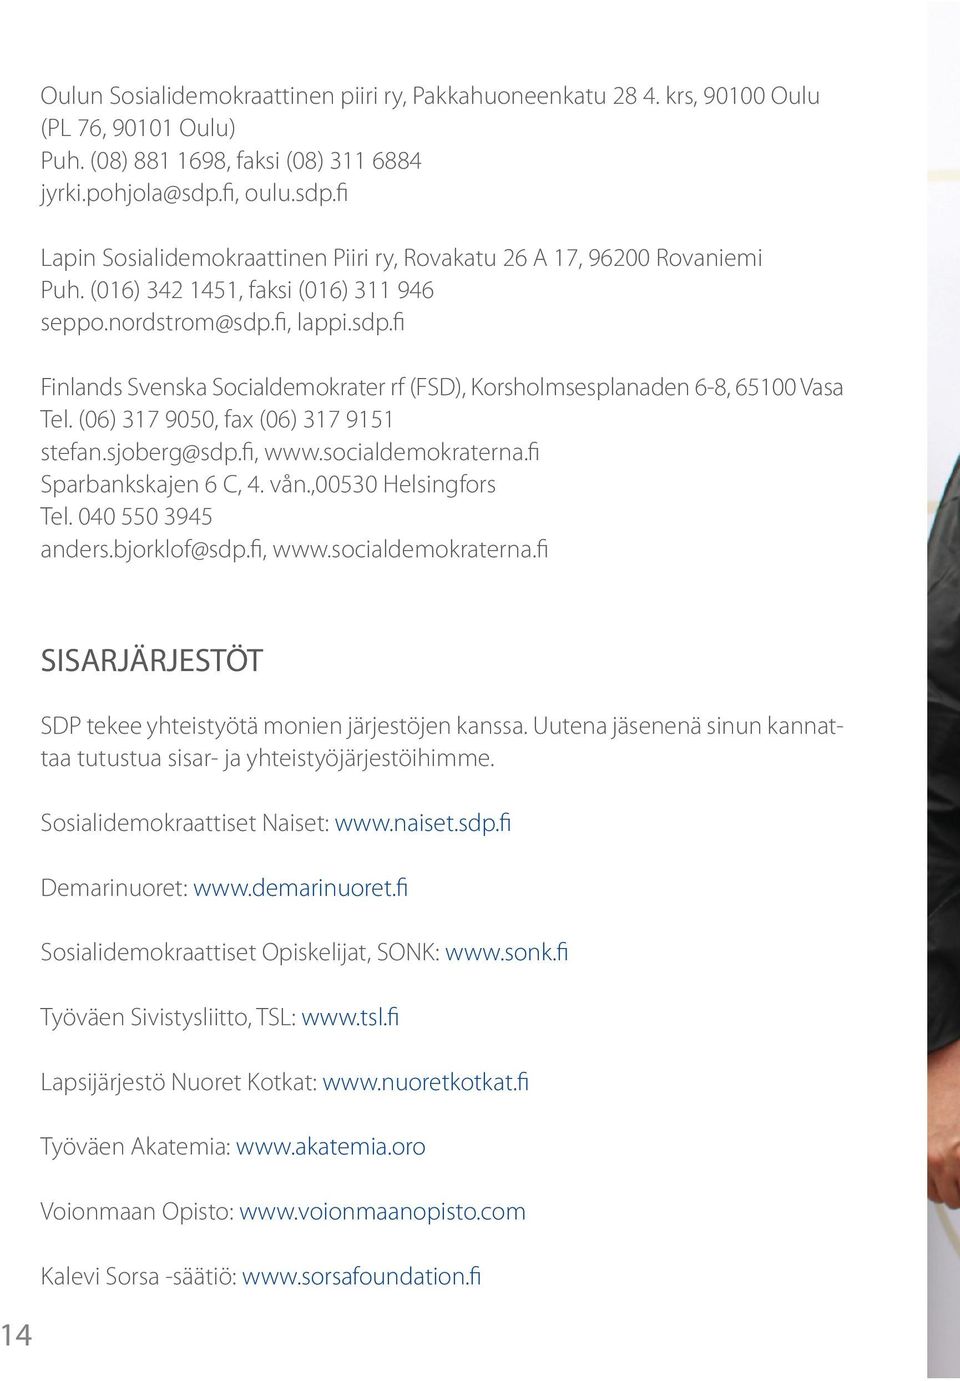 (06) 317 9050, fax (06) 317 9151 stefan.sjoberg@sdp.fi, www.socialdemokraterna.fi Sparbankskajen 6 C, 4. vån.,00530 Helsingfors Tel. 040 550 3945 anders.bjorklof@sdp.fi, www.socialdemokraterna.fi 14 SISARJÄRJESTÖT SDP tekee yhteistyötä monien järjestöjen kanssa.